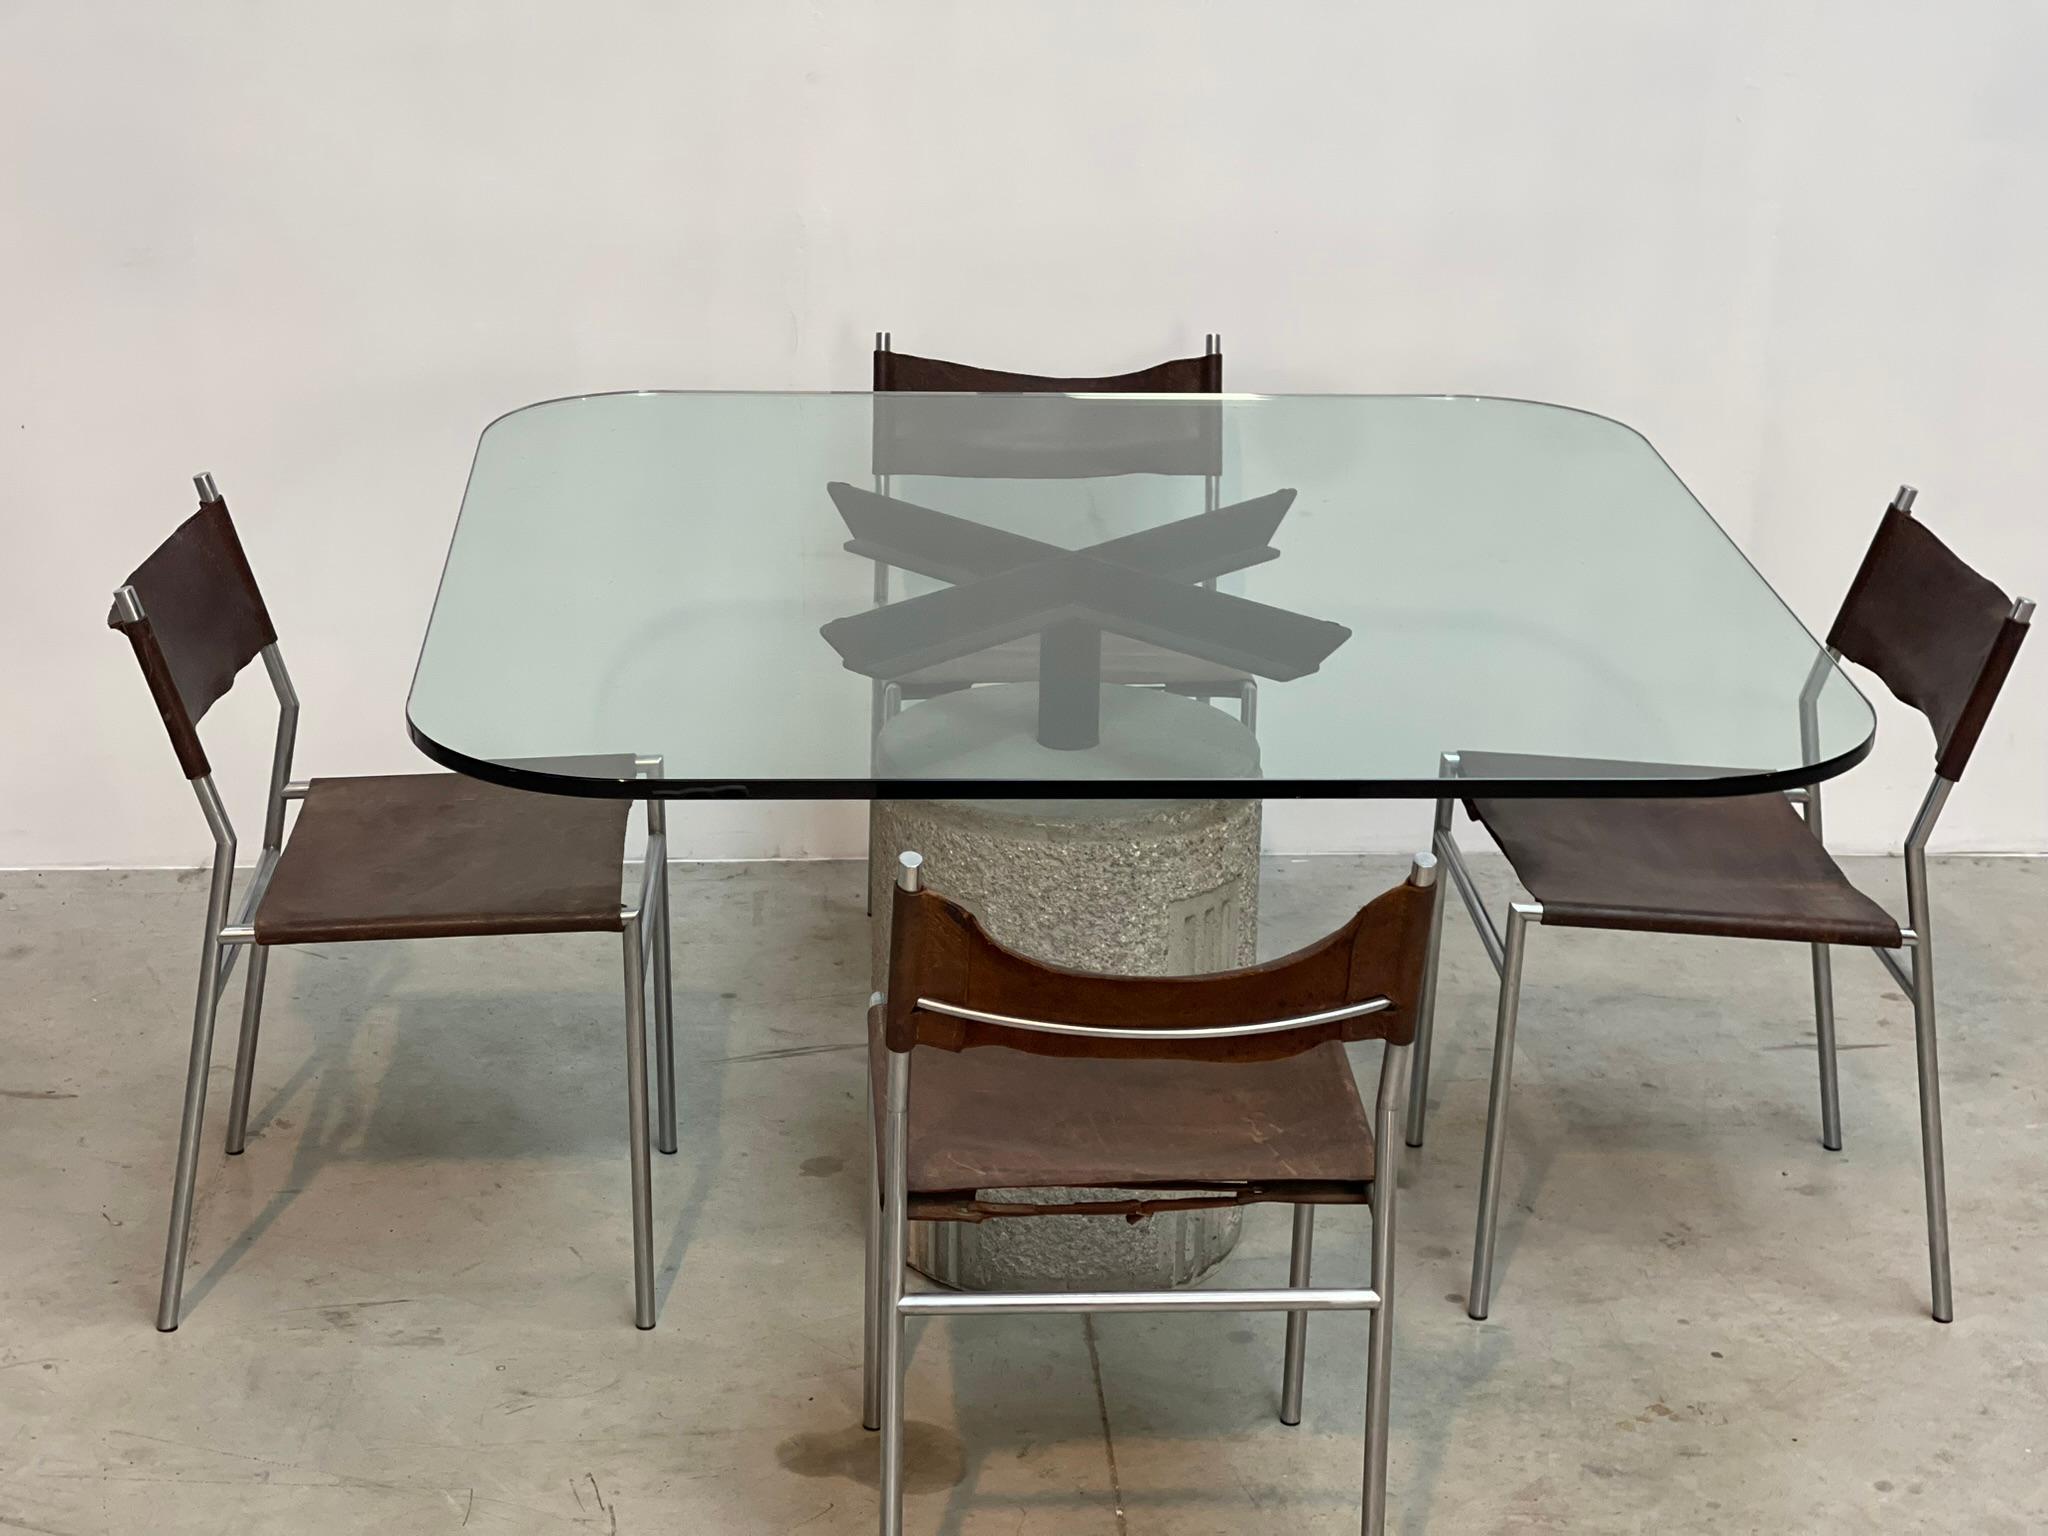 Table centrale ou de salle à manger en béton et métal conçue par Giovanni Offredi pour Saporiti Italie modèle 'Paracarro'.

La table est livrée avec son plateau d'origine à bords arrondis.

La base de la table est en bon état.

Années 1970 -